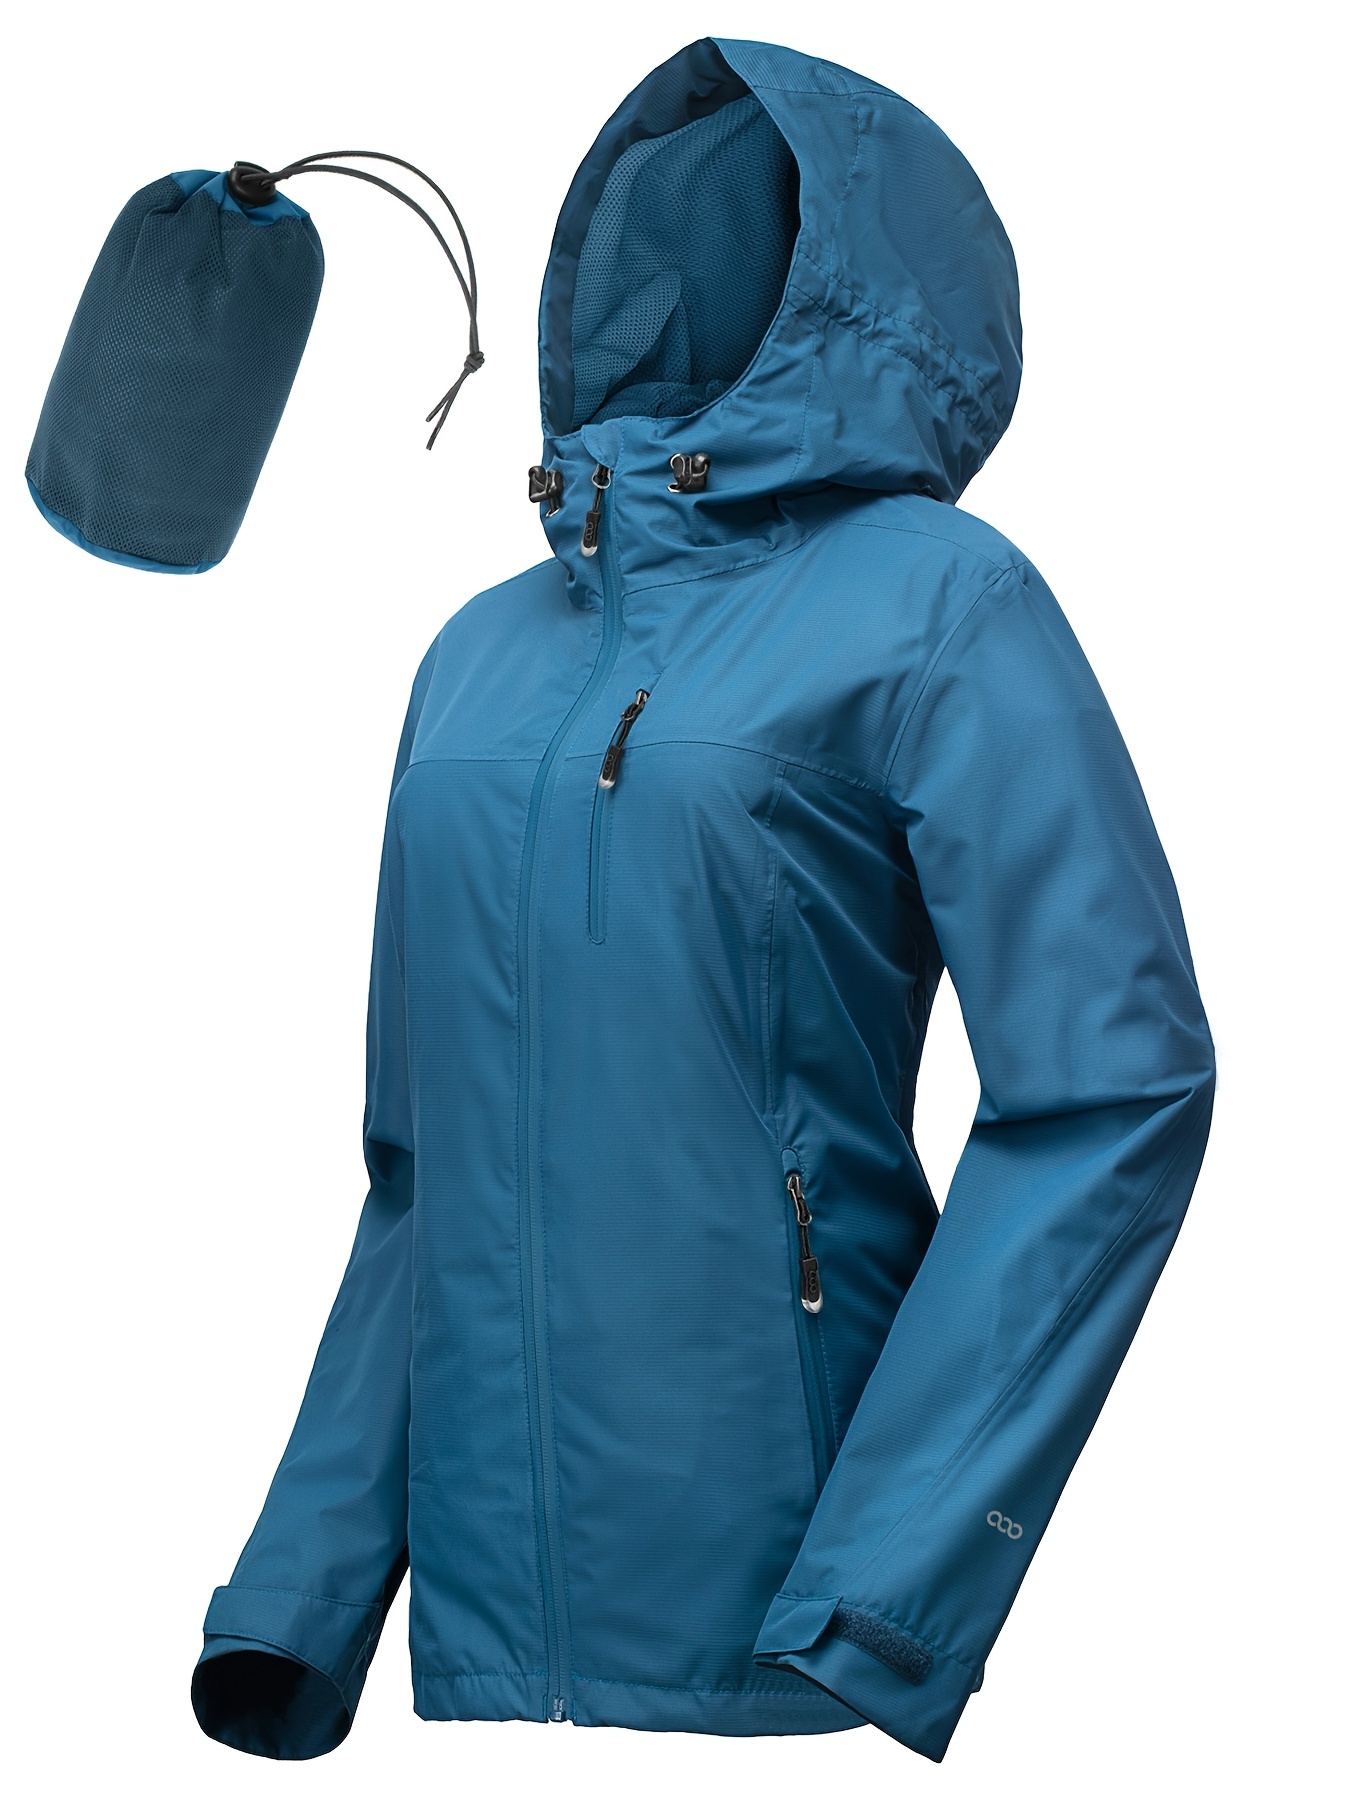 Tejiojio Women Jacket Hooded Windproof Lightweight Plus Size Packable Long  Windbreaker Outdoor Travel Hiking Trench Coats 